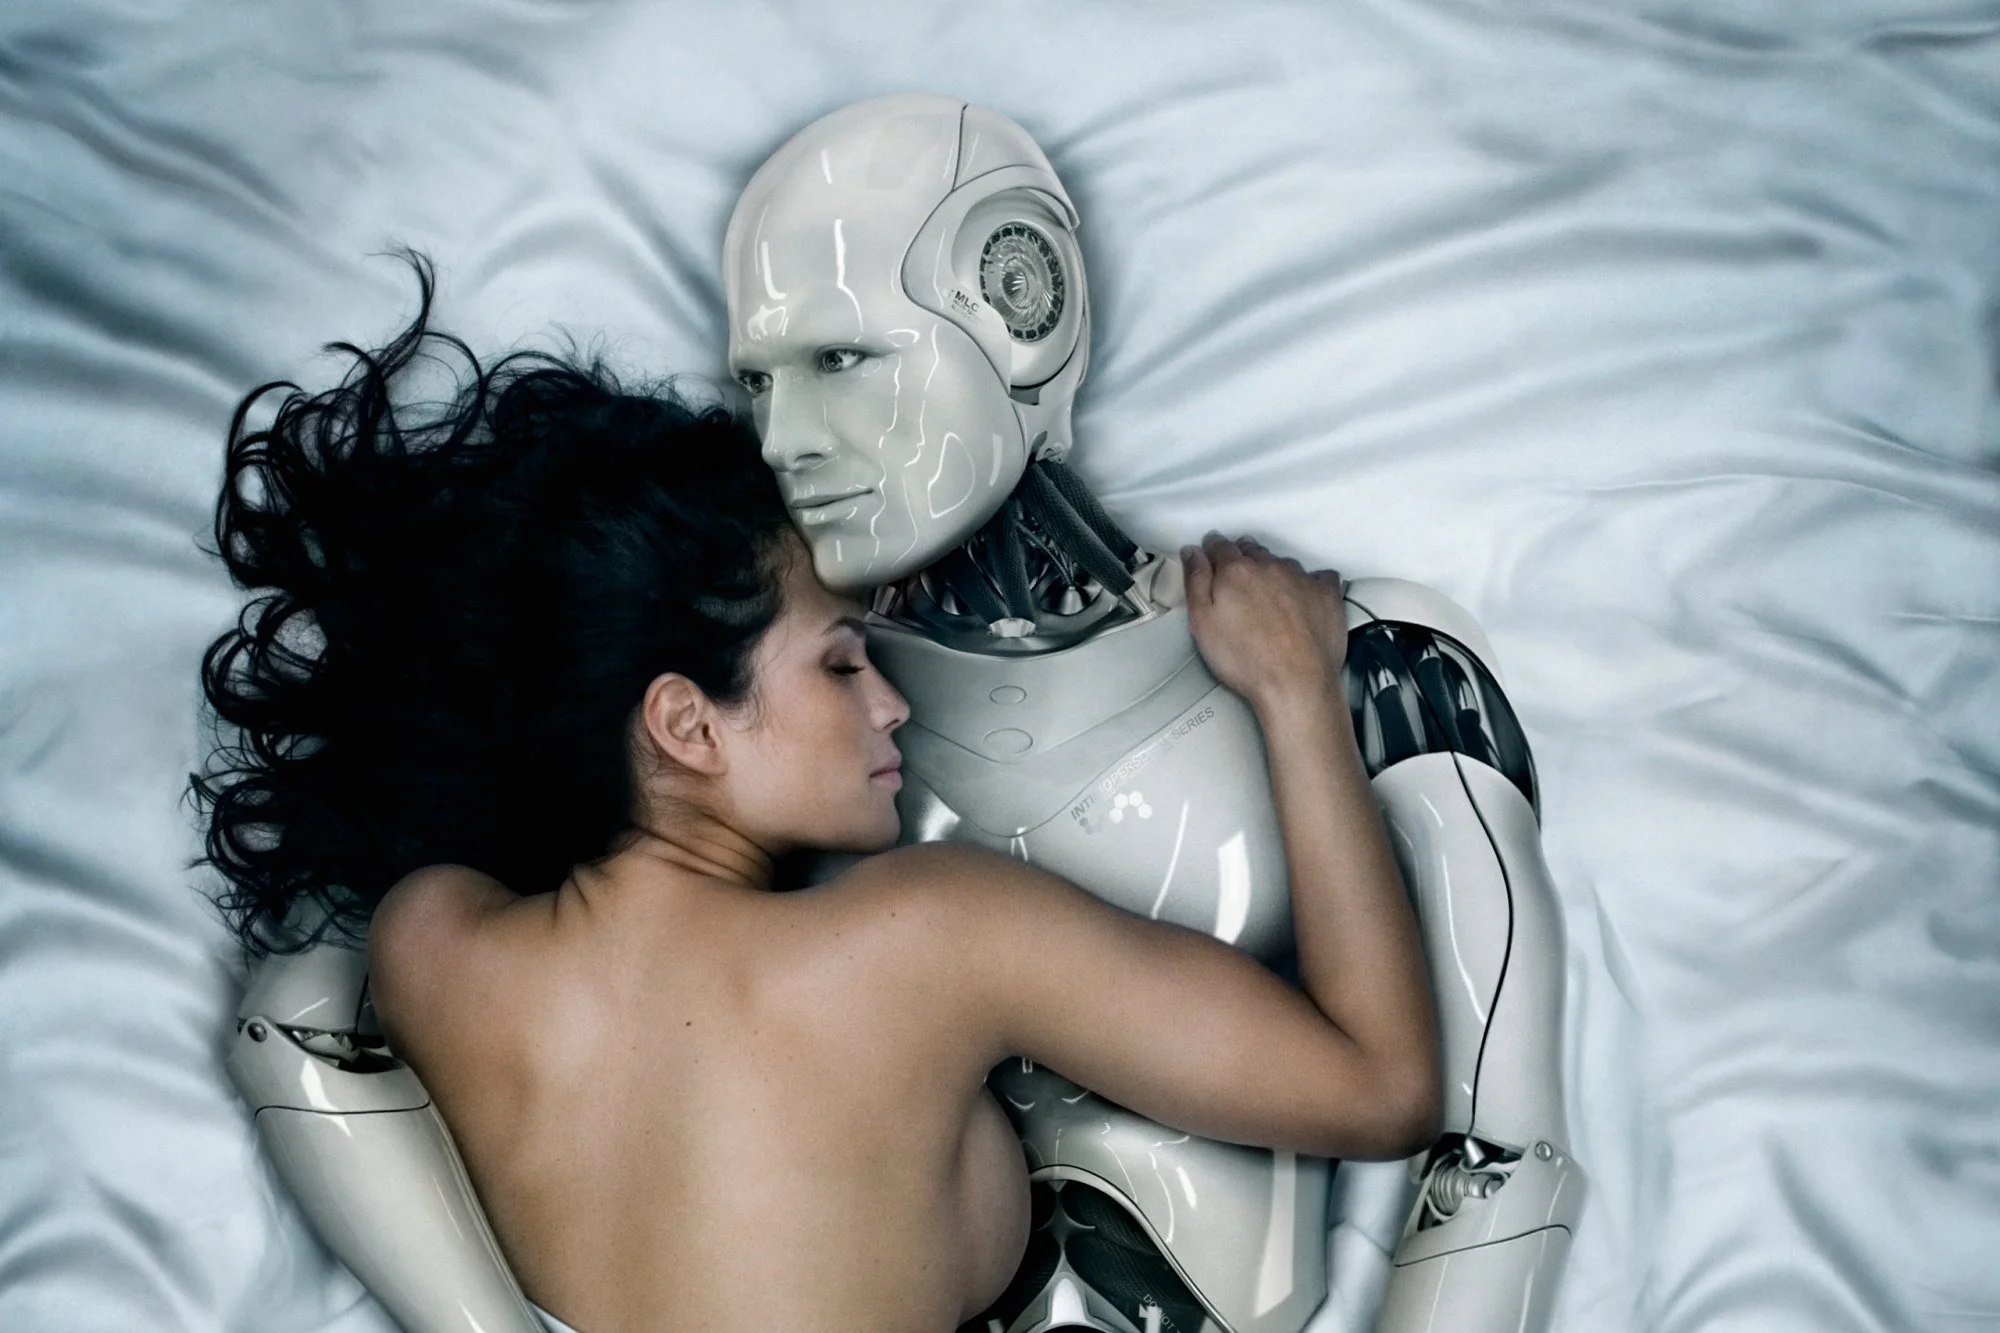 Когда человек сможет заняться сексом с роботом? Мнения разделились - фото 1